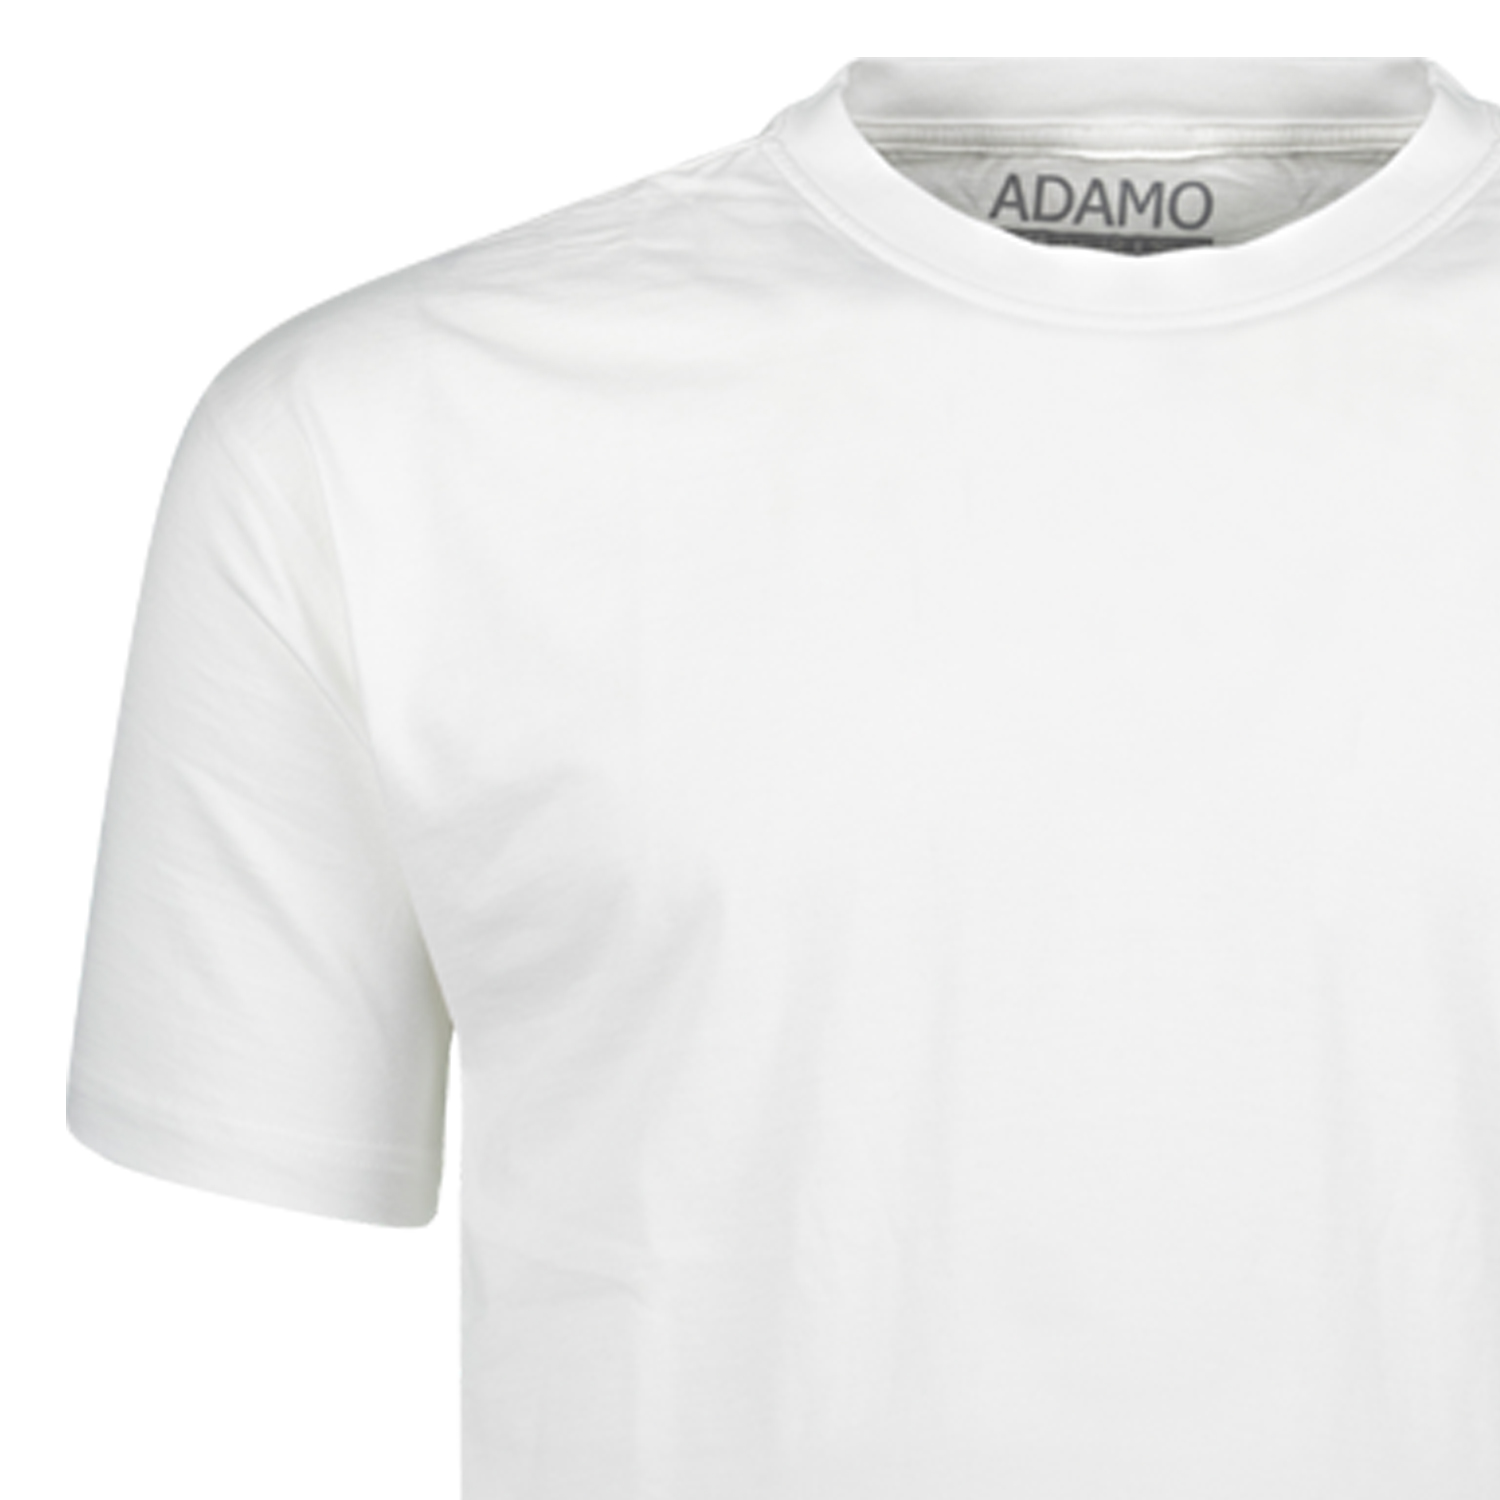 T-shirts série KEVIN by ADAMO jusqu'à la grande taille 10XL - couleur: blanche